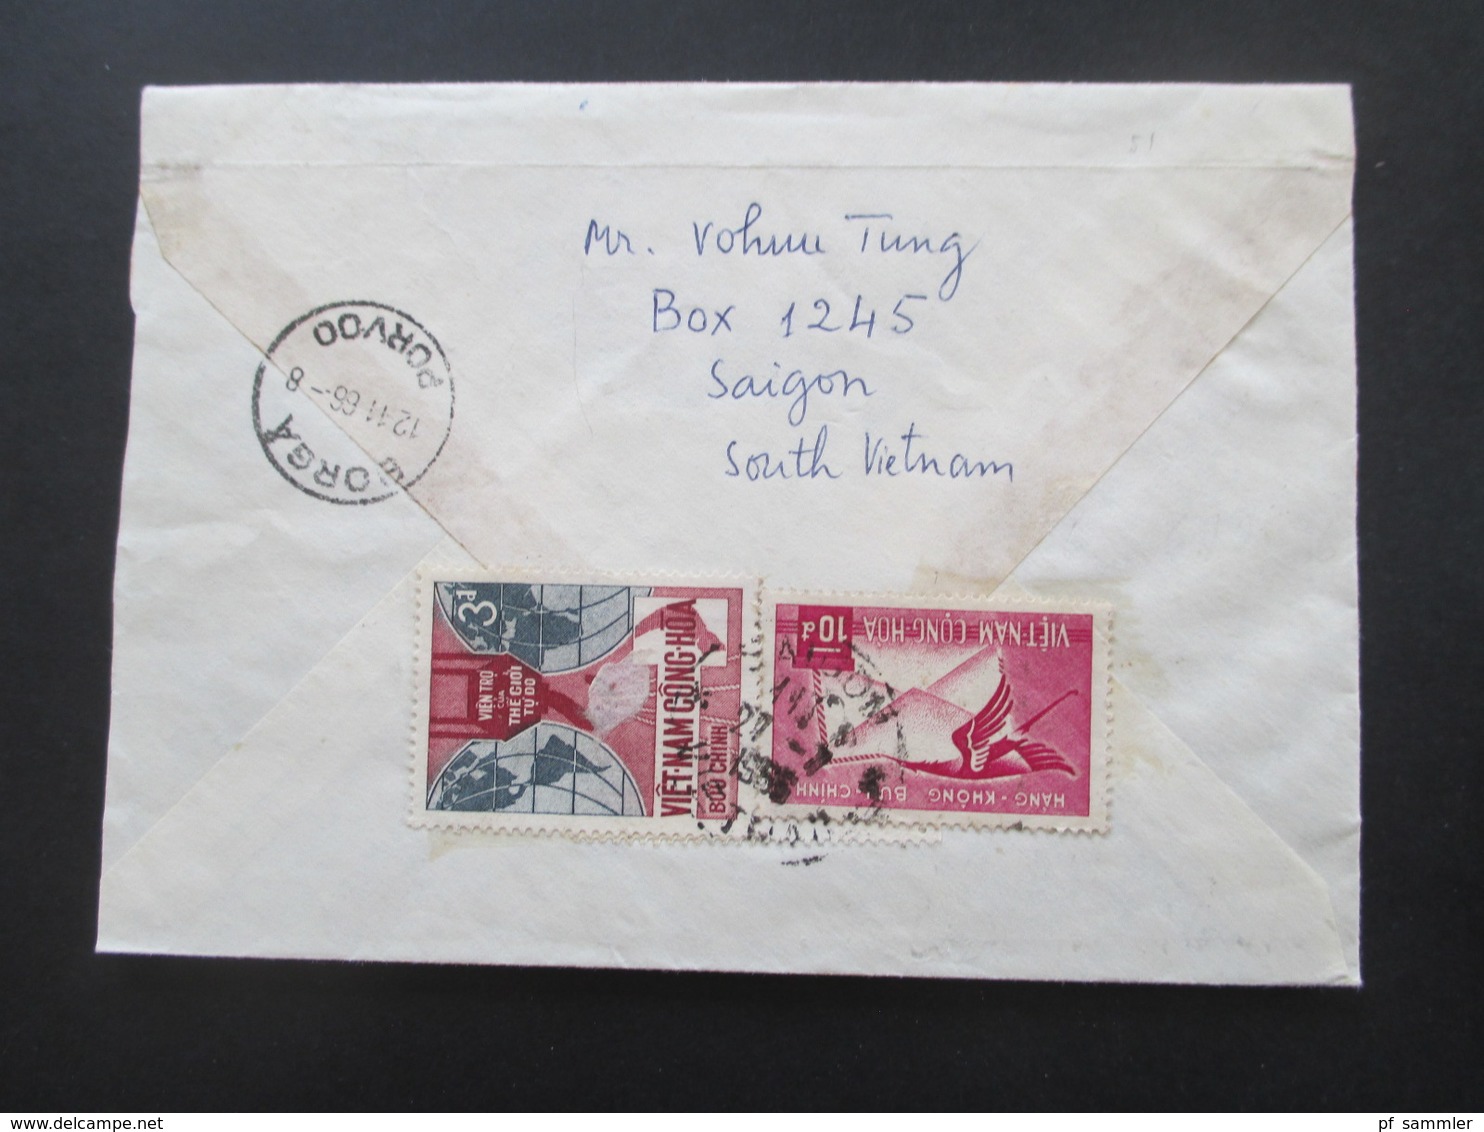 Vietnam / Süd Vietnam 1966 Voie Maritime Auslandsbrief Nach Borga Finnland. Einschreiben Saigon CTC - Vietnam